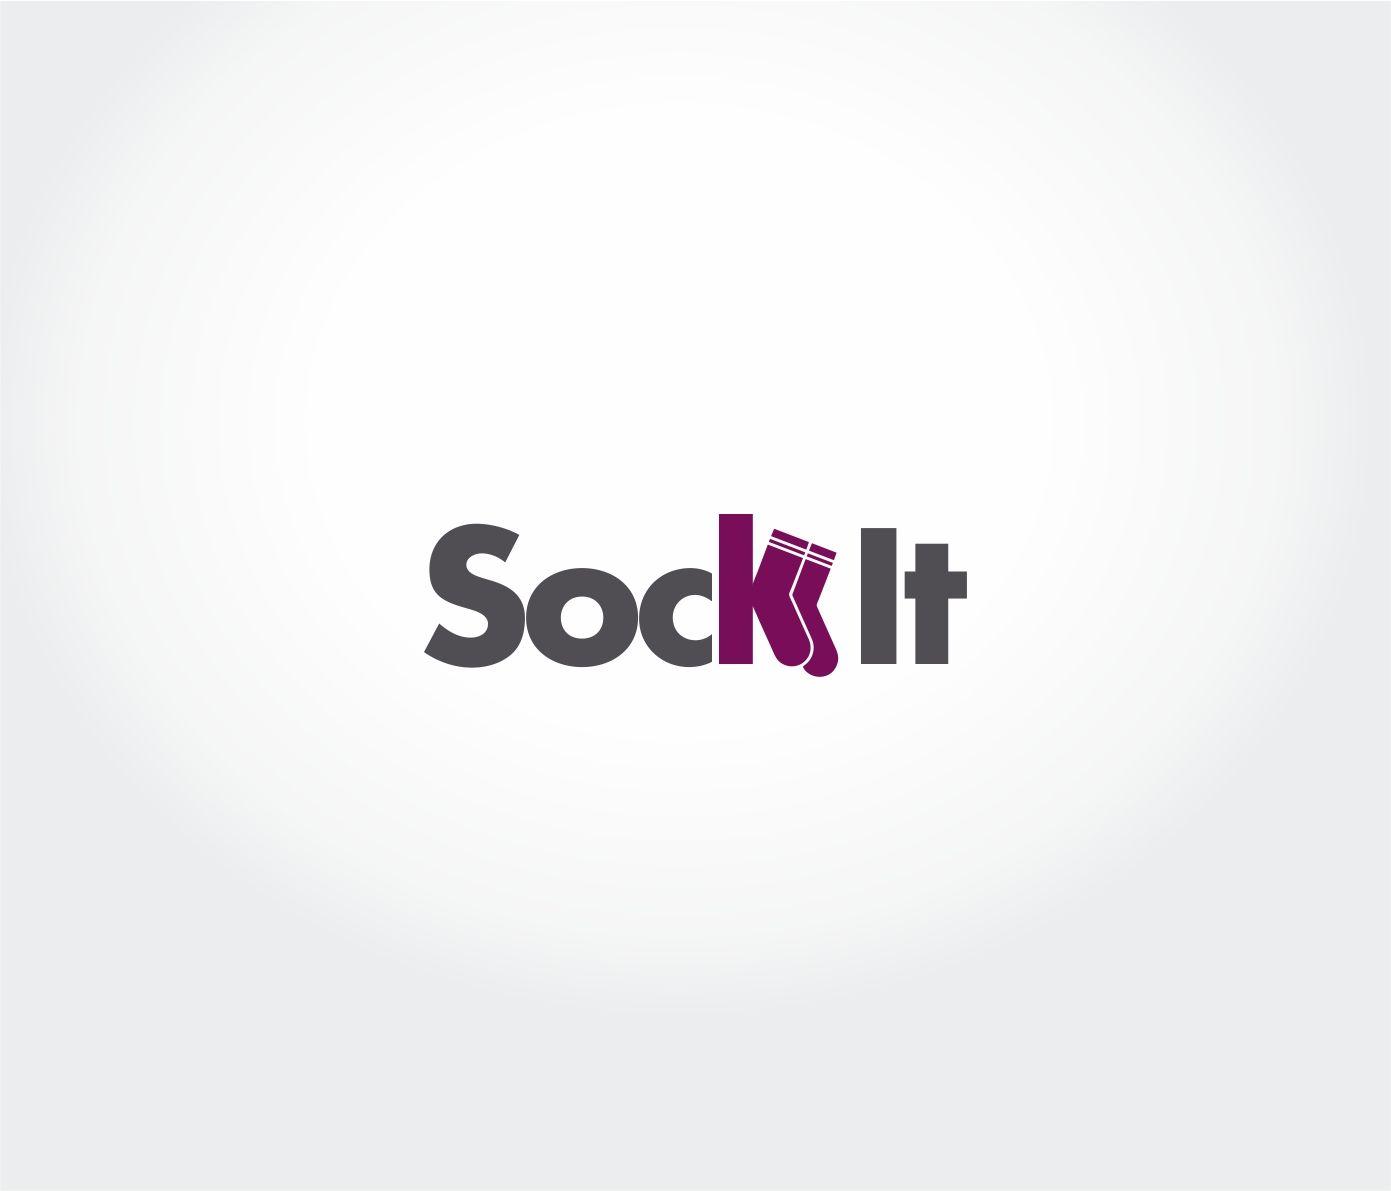 Sock Logo - Playful, Modern, Clothing Logo Design for Sock It